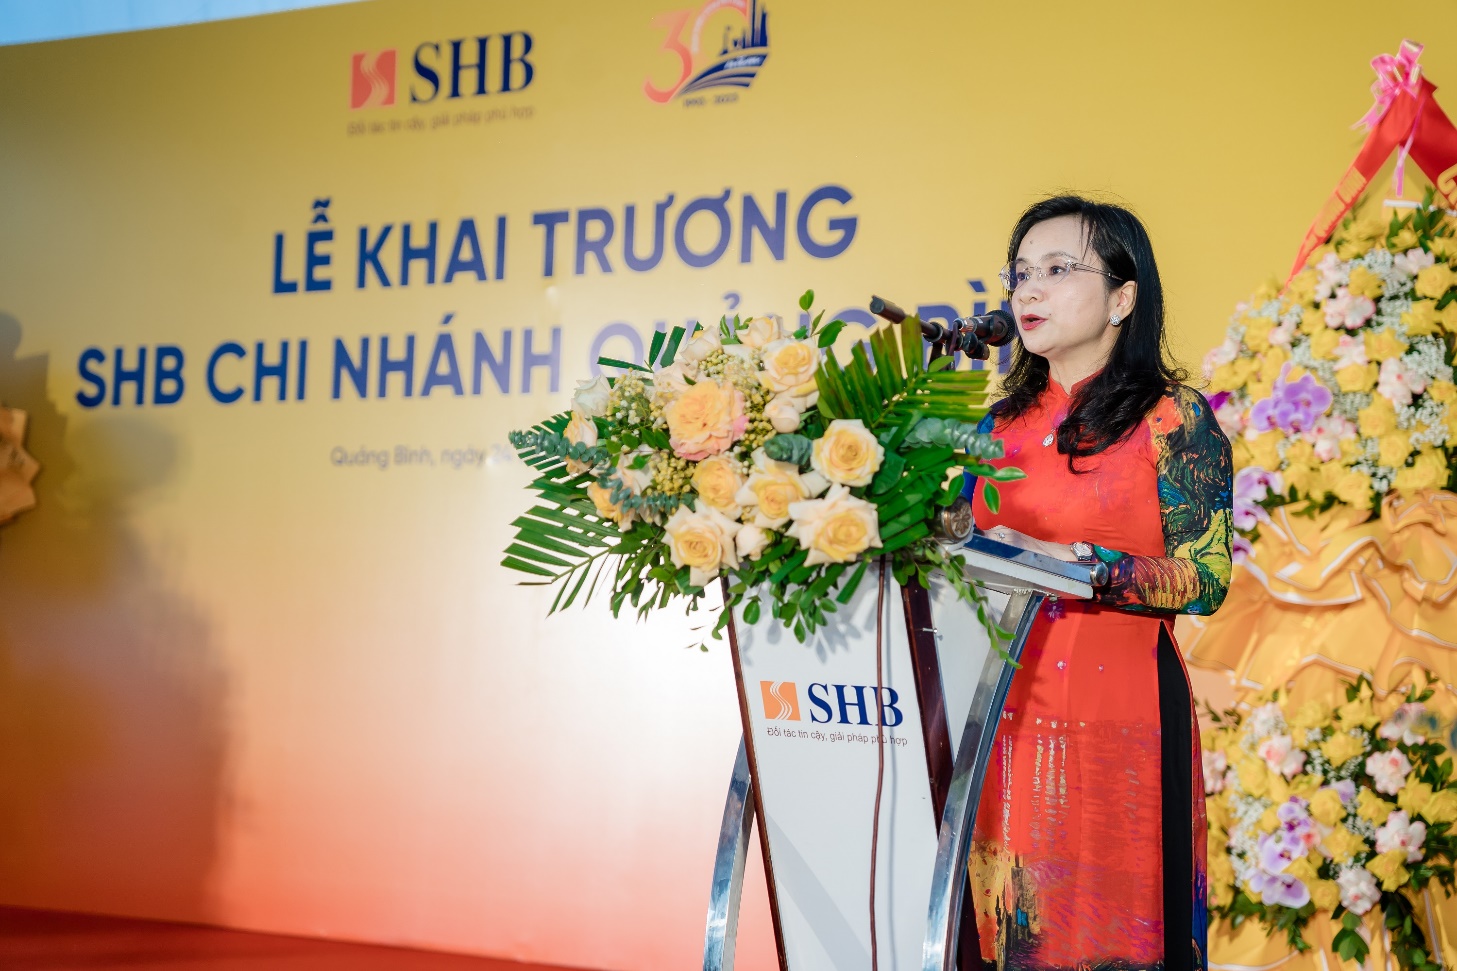 Tăng cường phát triển mạng lưới, SHB khai trương chi nhánh tại Quảng Bình - Ảnh 2.